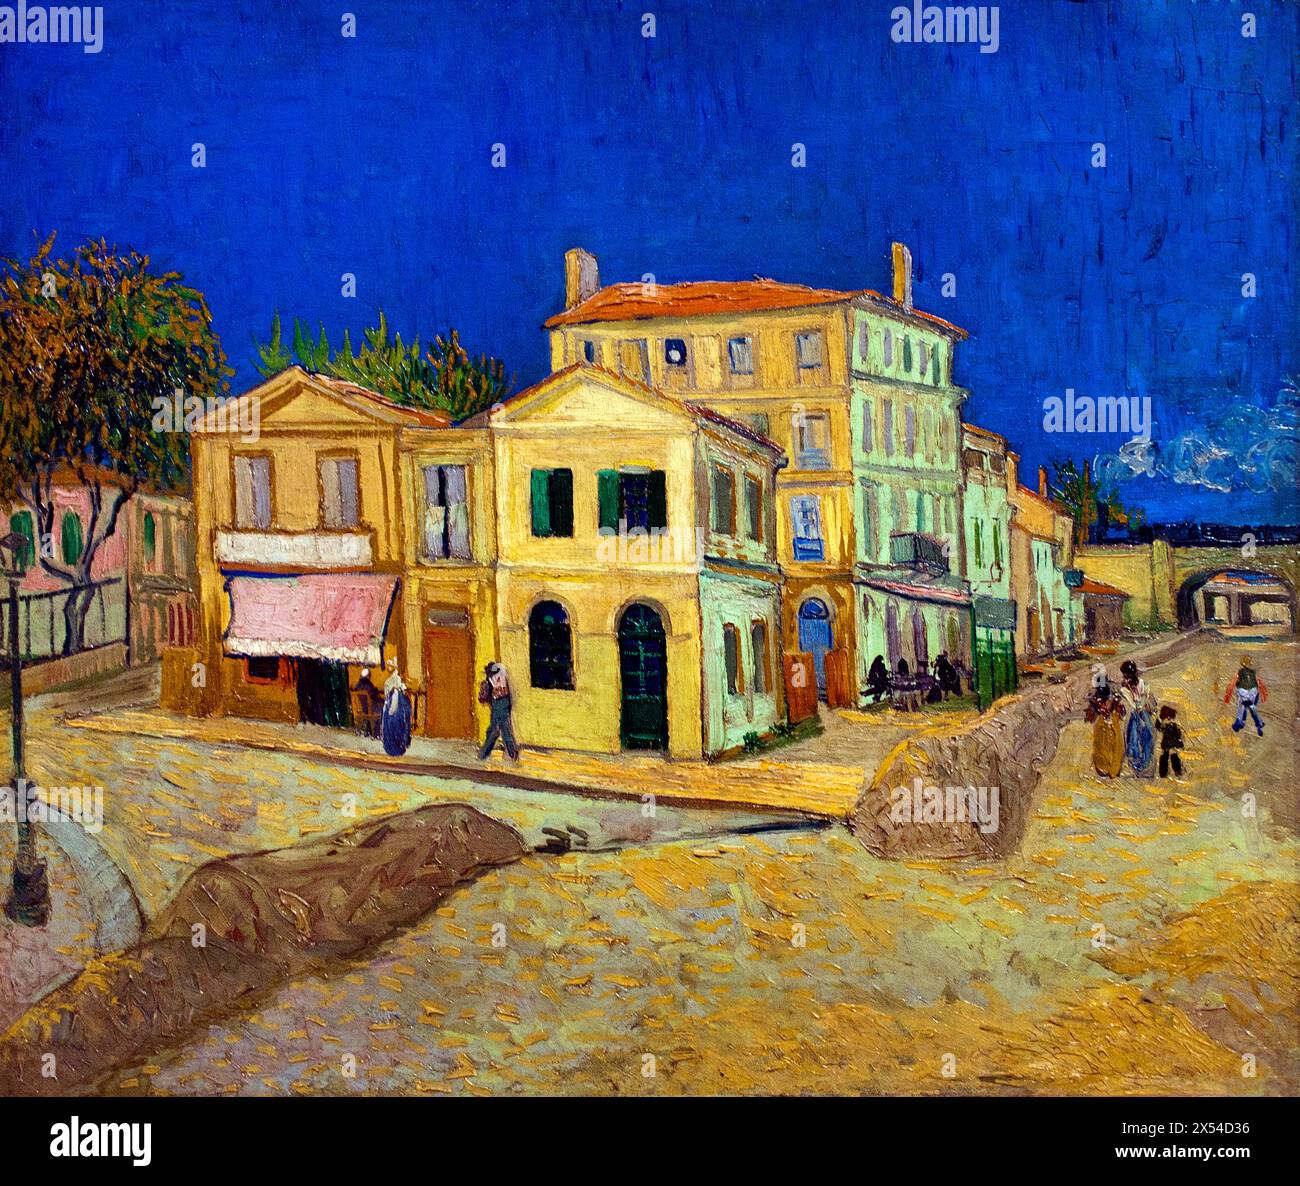 La Maison jaune - la rue 1888 Vincent van Gogh 1853 - 1890 Hollandais pays-Bas ( la Maison jaune à Arles France, détruite la seconde guerre mondiale ) Banque D'Images